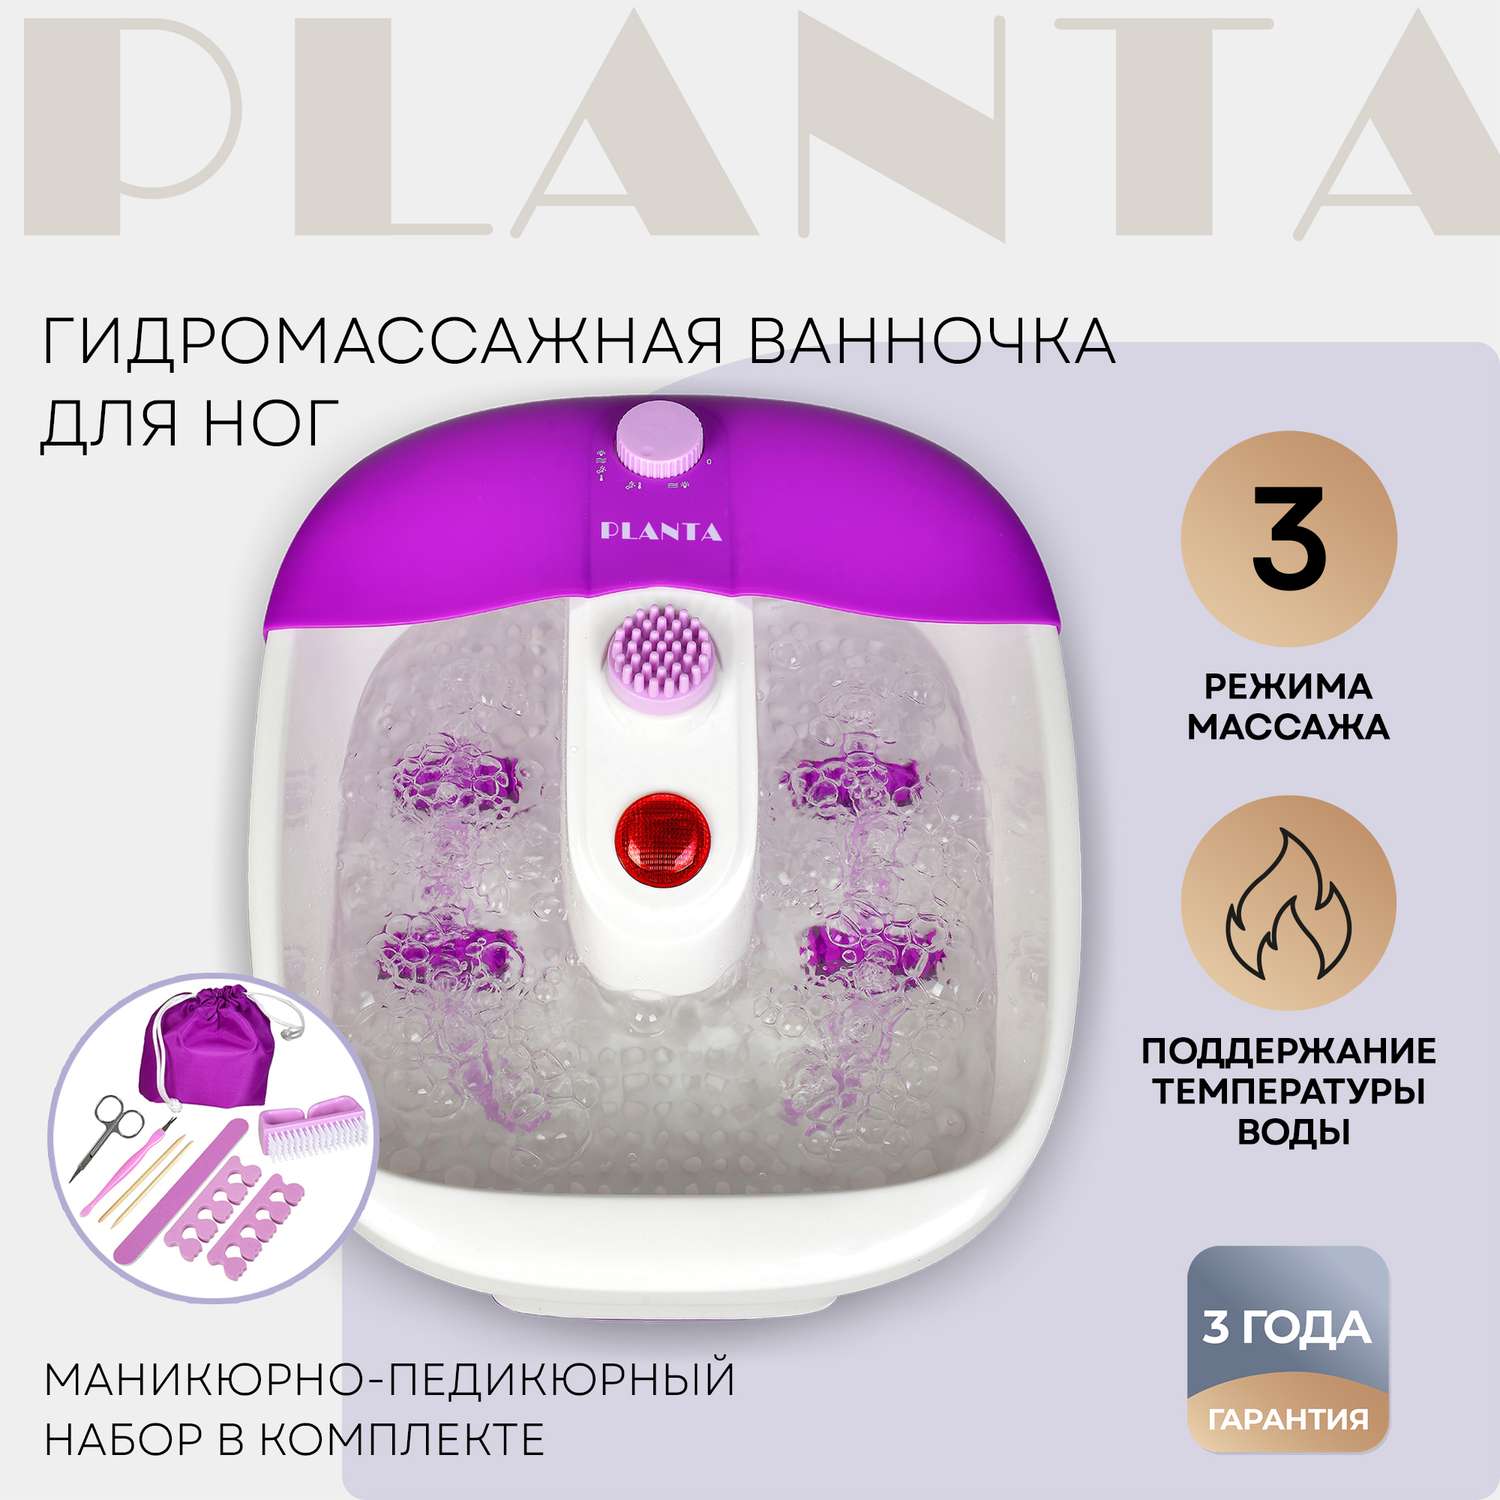 Гидромассажная ванночка Planta MFS-200V Spa Salon с подогревом 3 режима работы функция сухого вибромассажа - фото 1